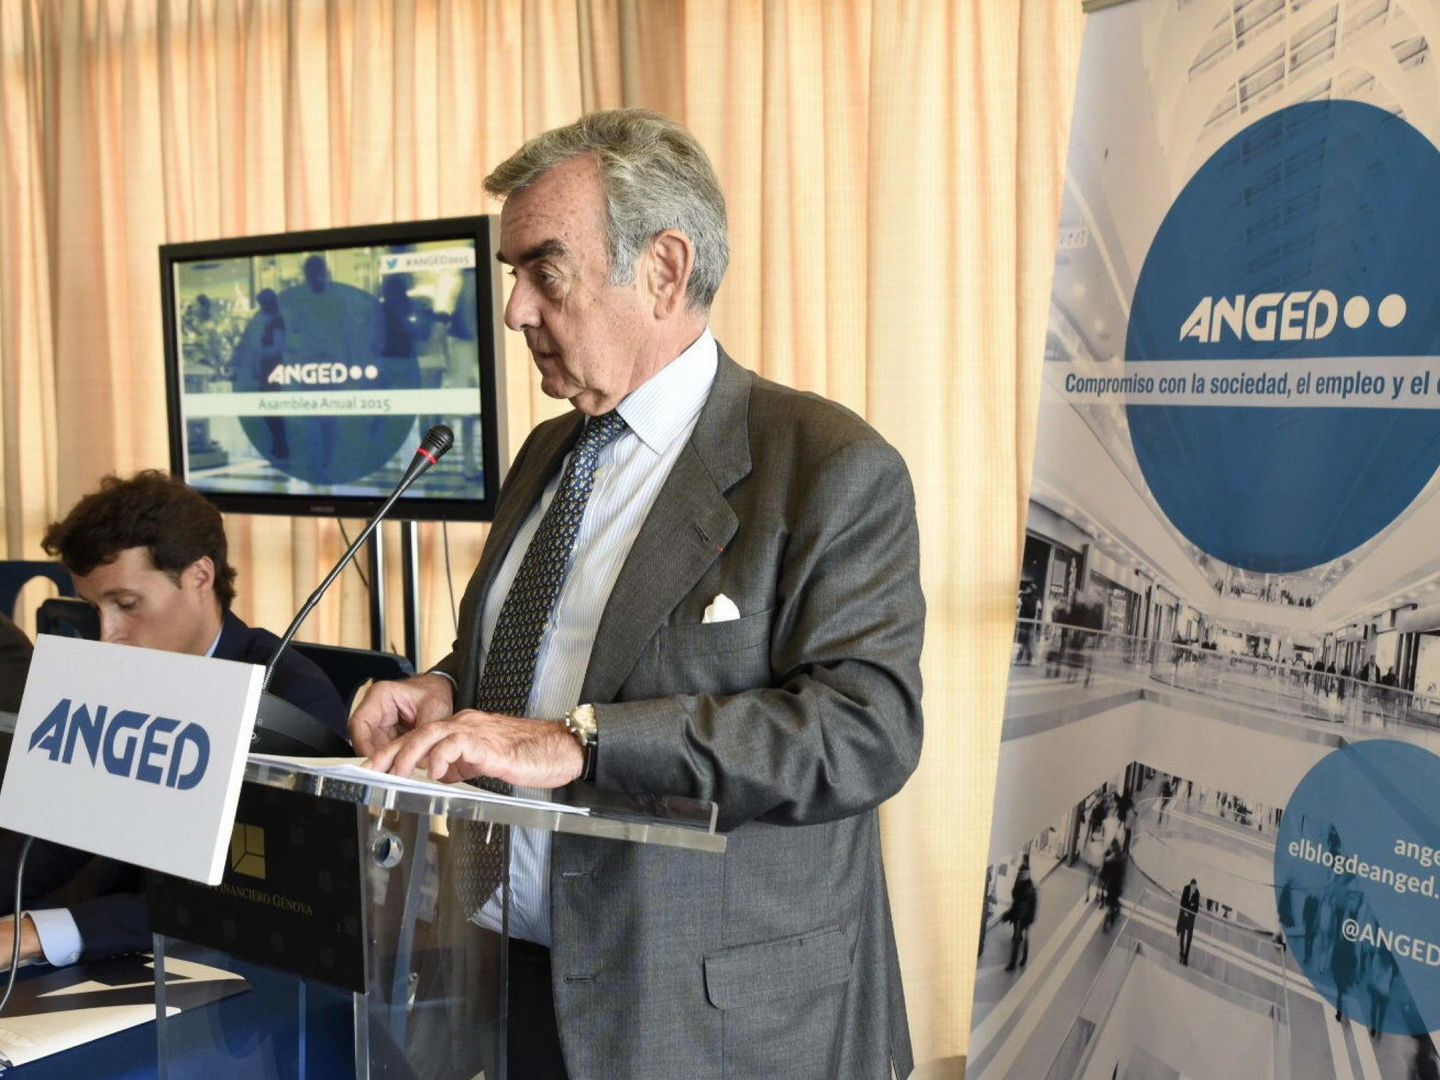 El presidente de la patronal de la gran distribución ANGED, Alfonso Merry del Val. (EFE)